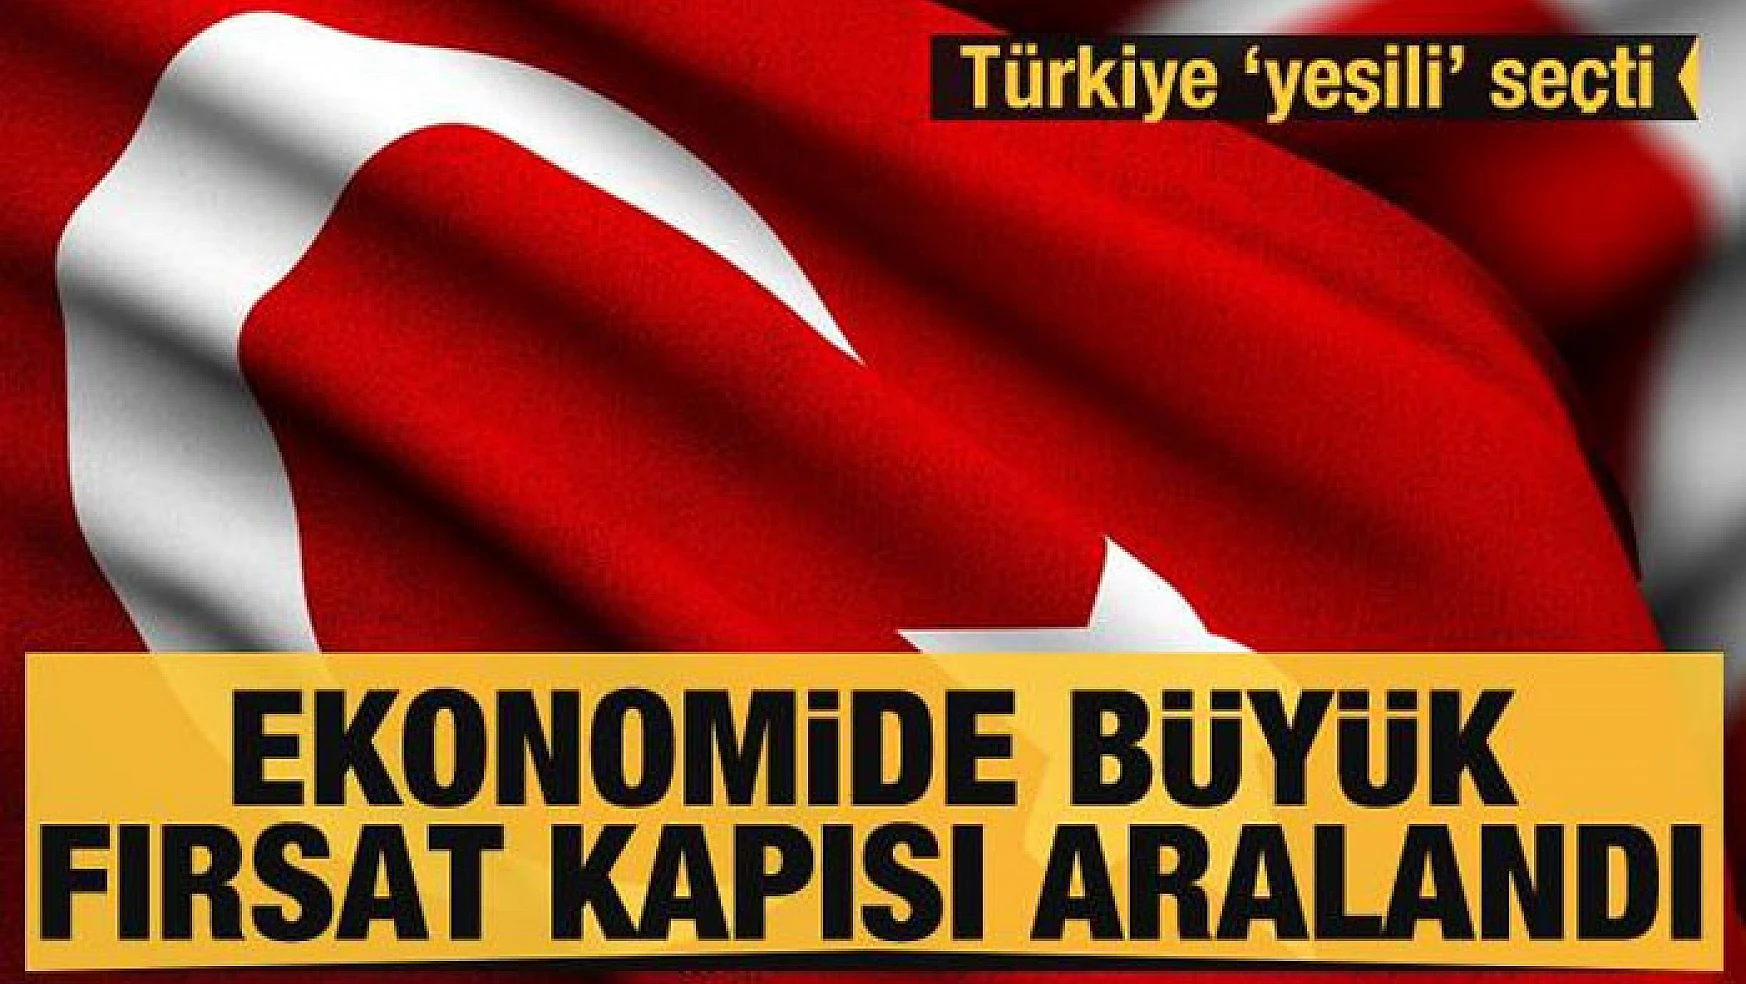 Türkiye 'yeşili' seçti! Ekonomide büyük fırsat kapısı aralandı